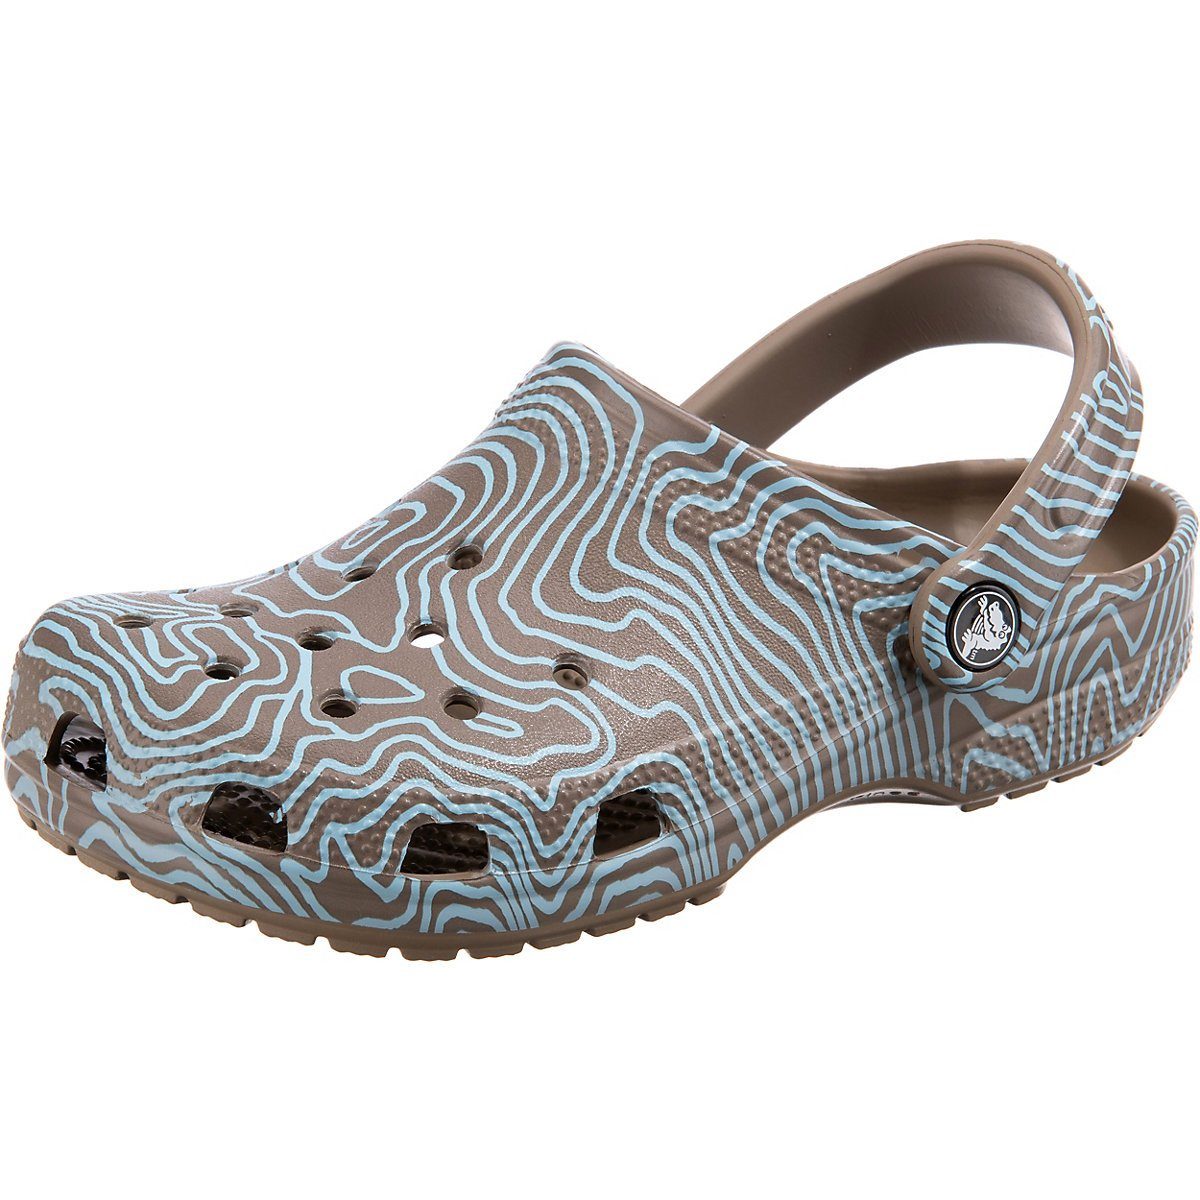 Crocs Damenschuhe online kaufen | OTTO